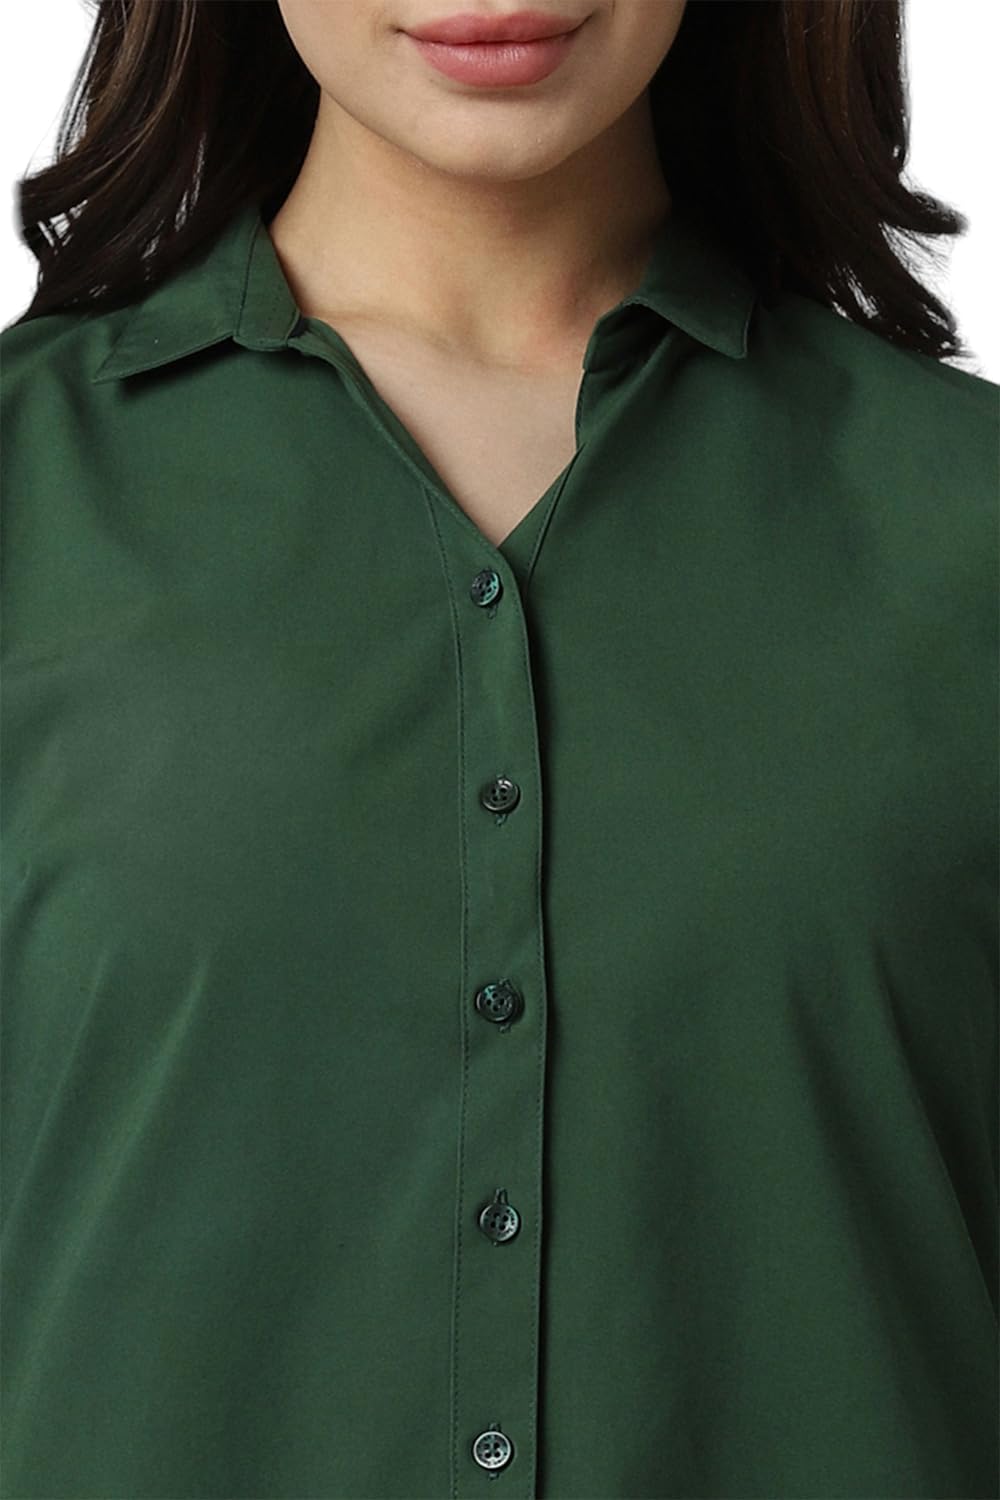 Allen Solly Women's Regular Fit Shirt (AHSFWRGFH67351_Green 